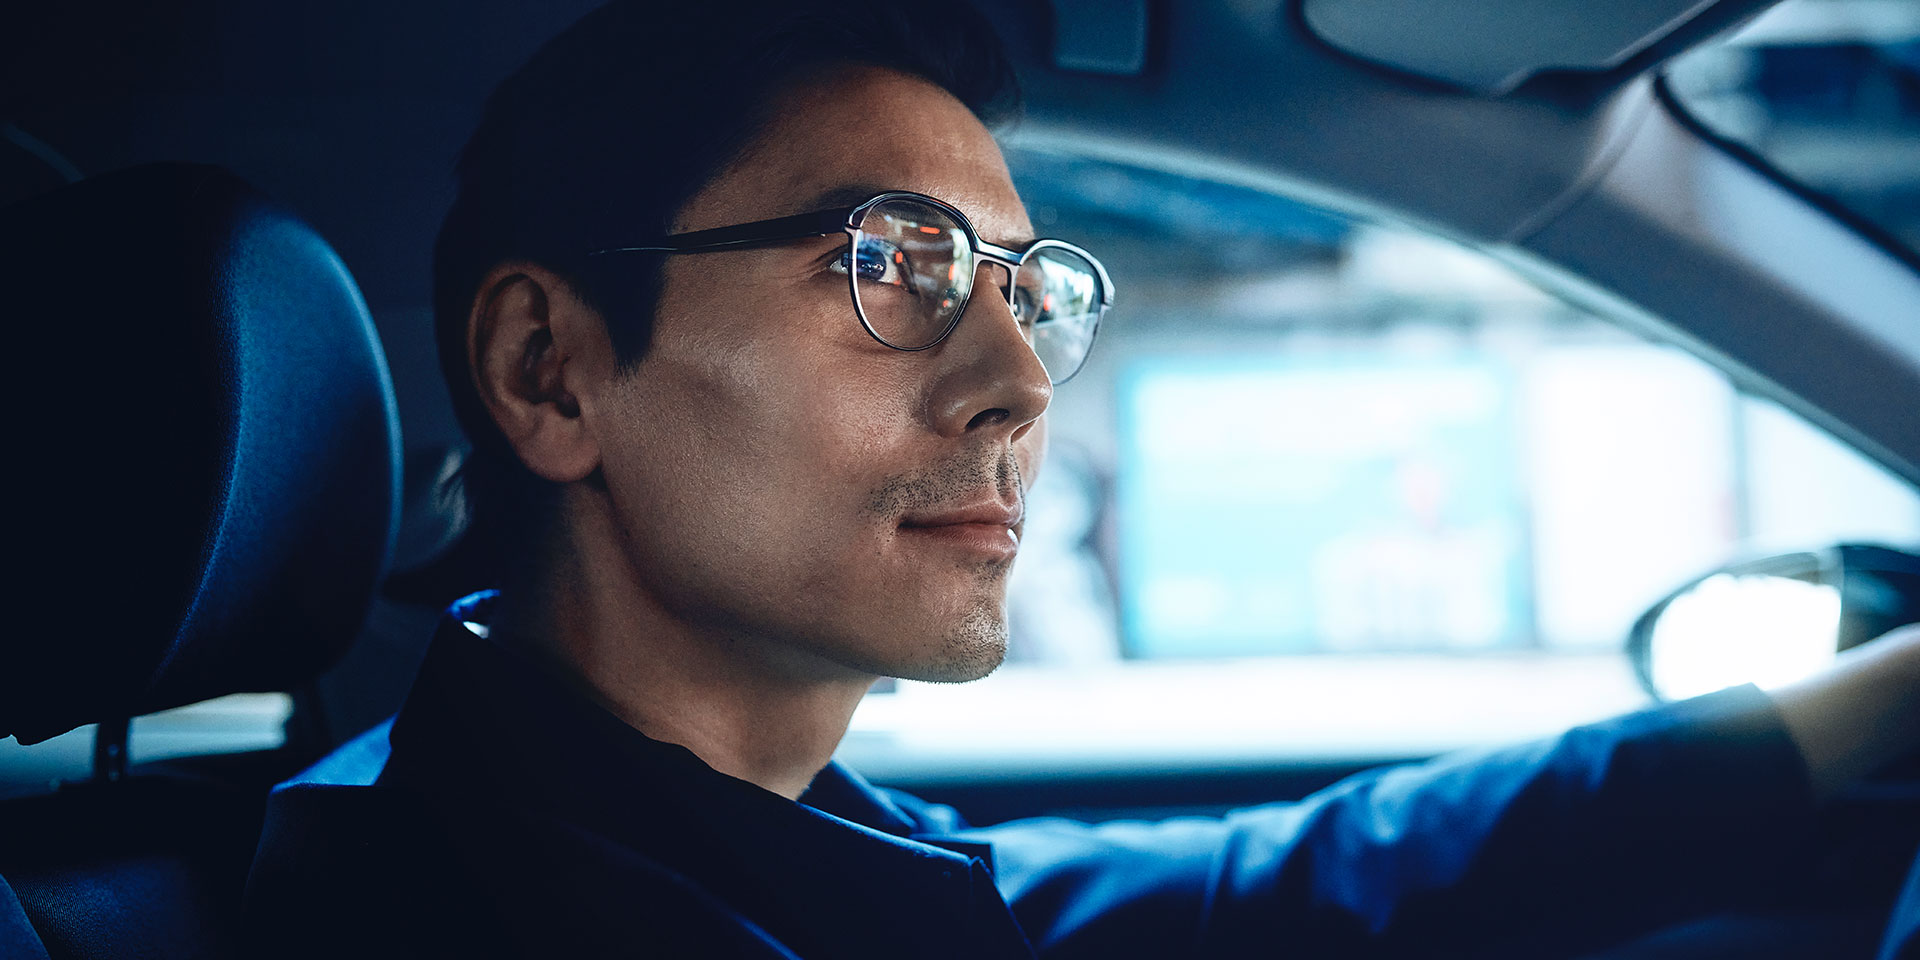 자동차를 운전하는 남성이 운전 중 약간 미소를 띠고 있으며 자신감 넘쳐 보인다. 자이스 드라이브세이프 단초점 렌즈를 착용하고 있다.